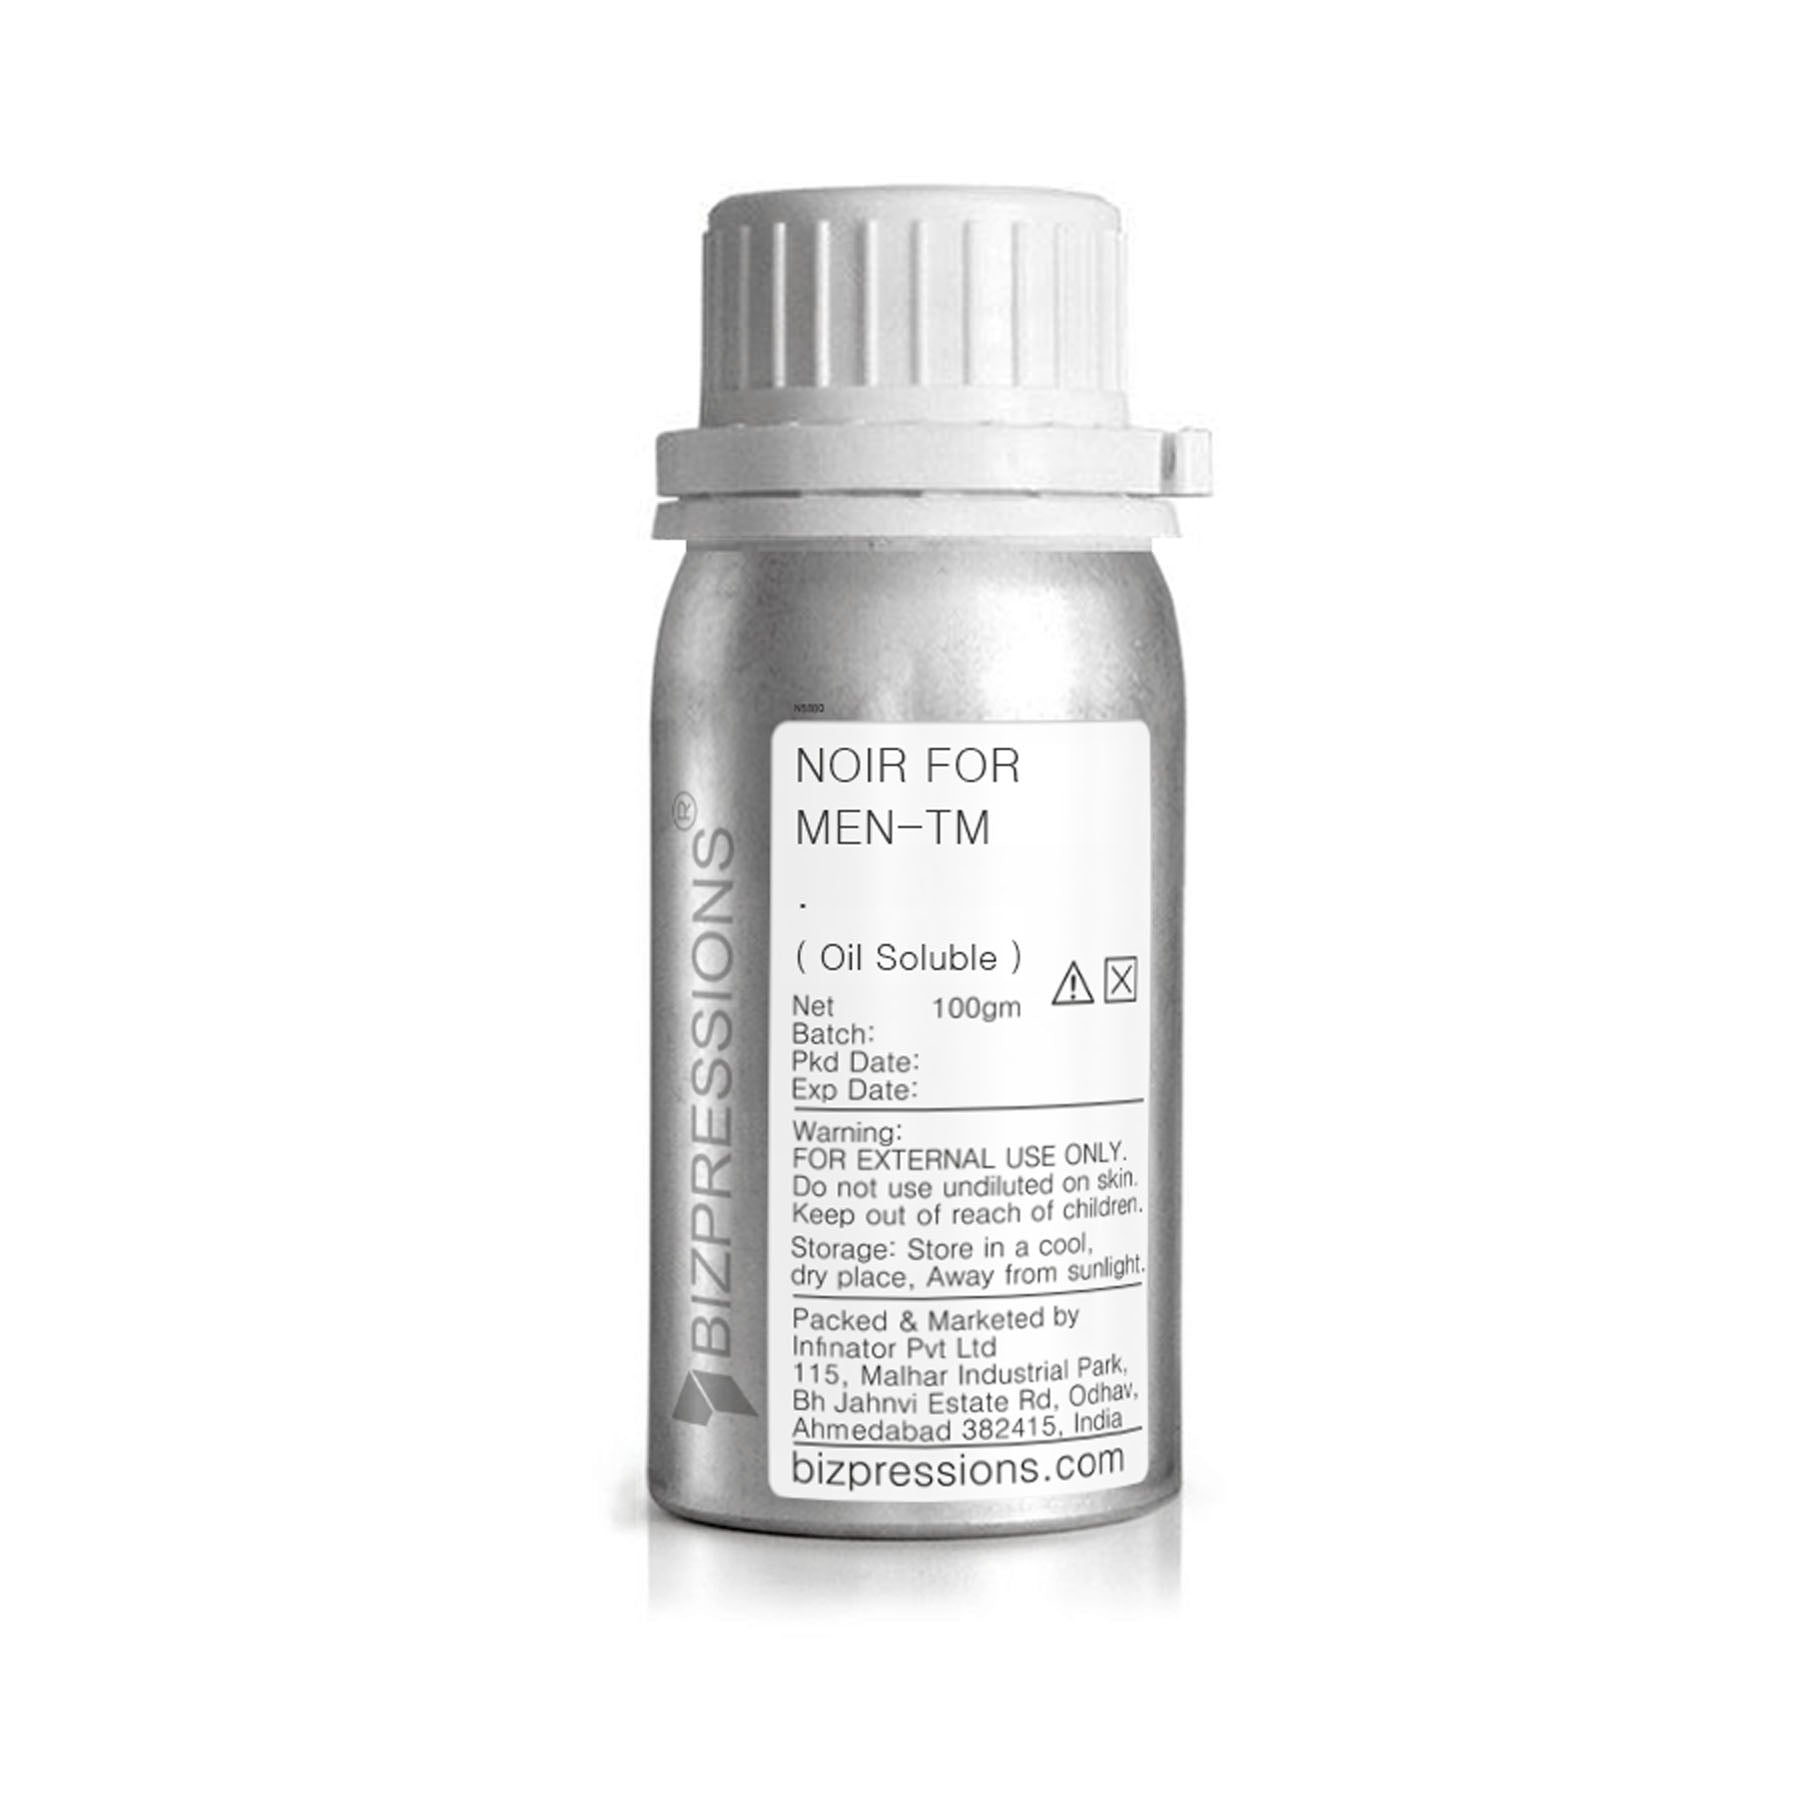 NOIR FOR MEN-TM - Fragrance ( Oil Soluble ) - 100 gm